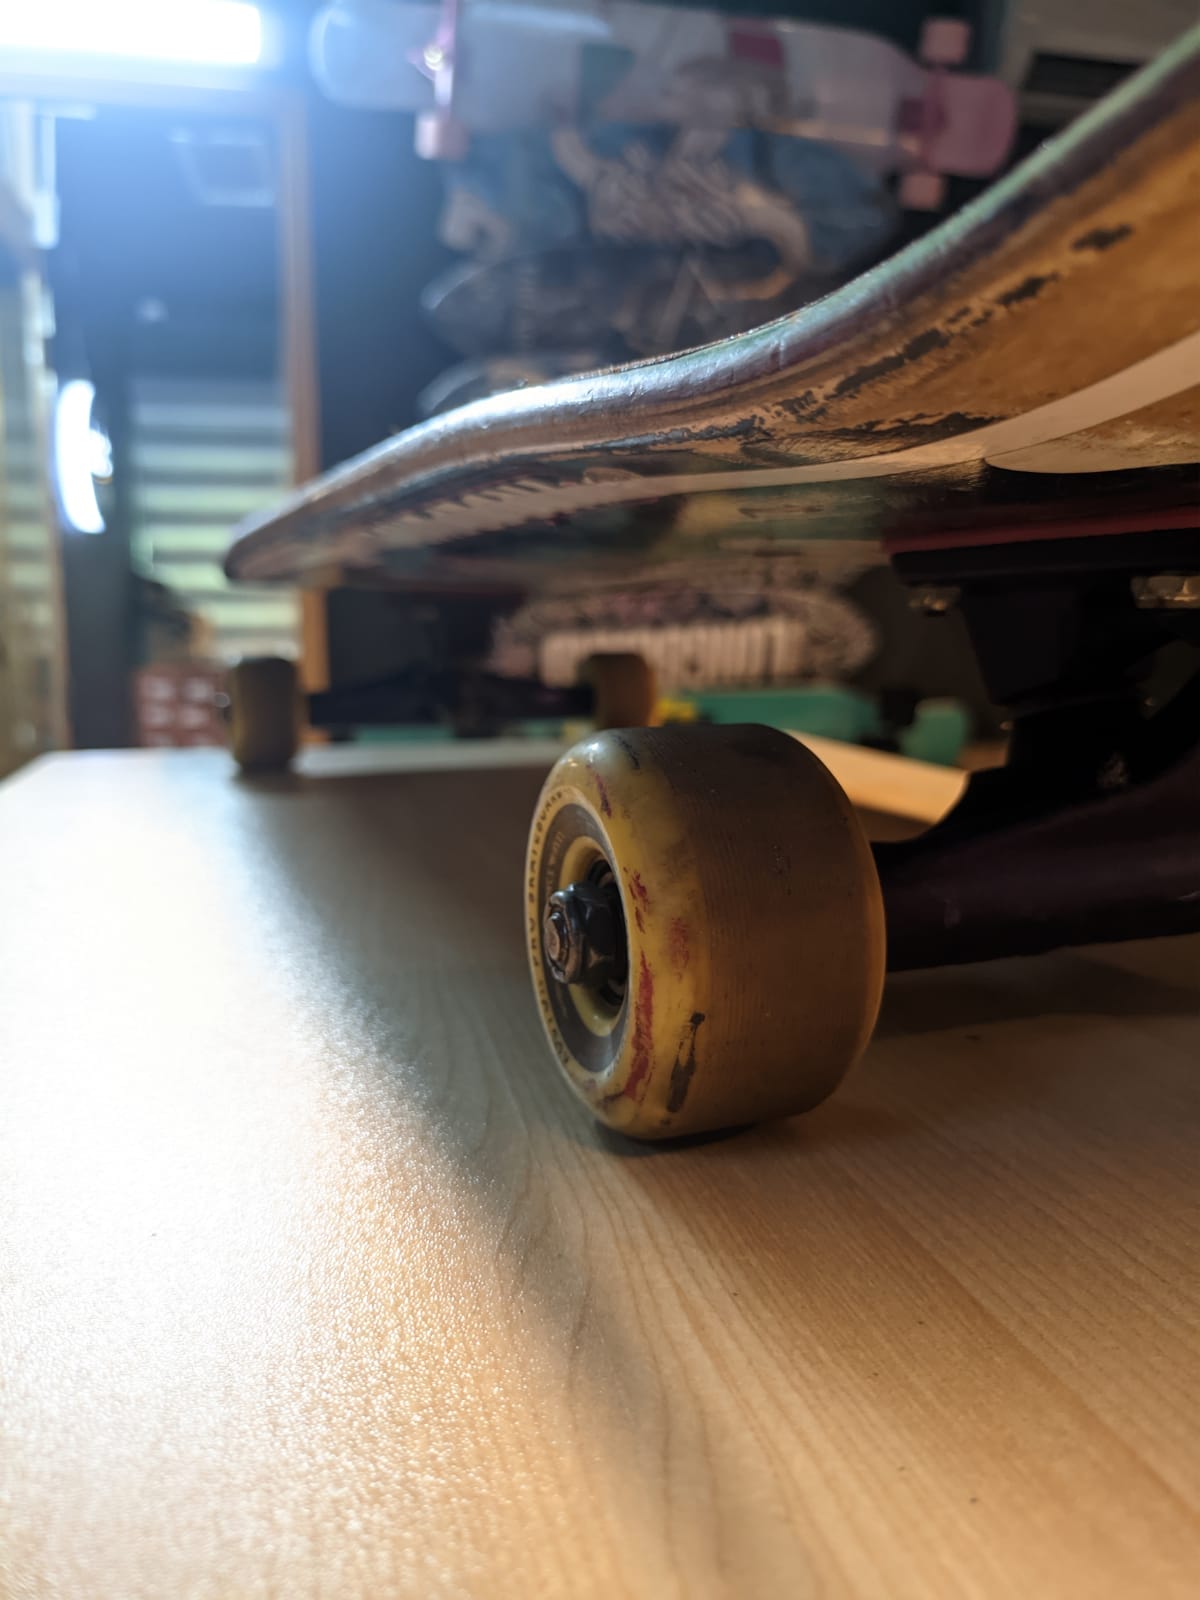 Left side of Kyle's old skateboard